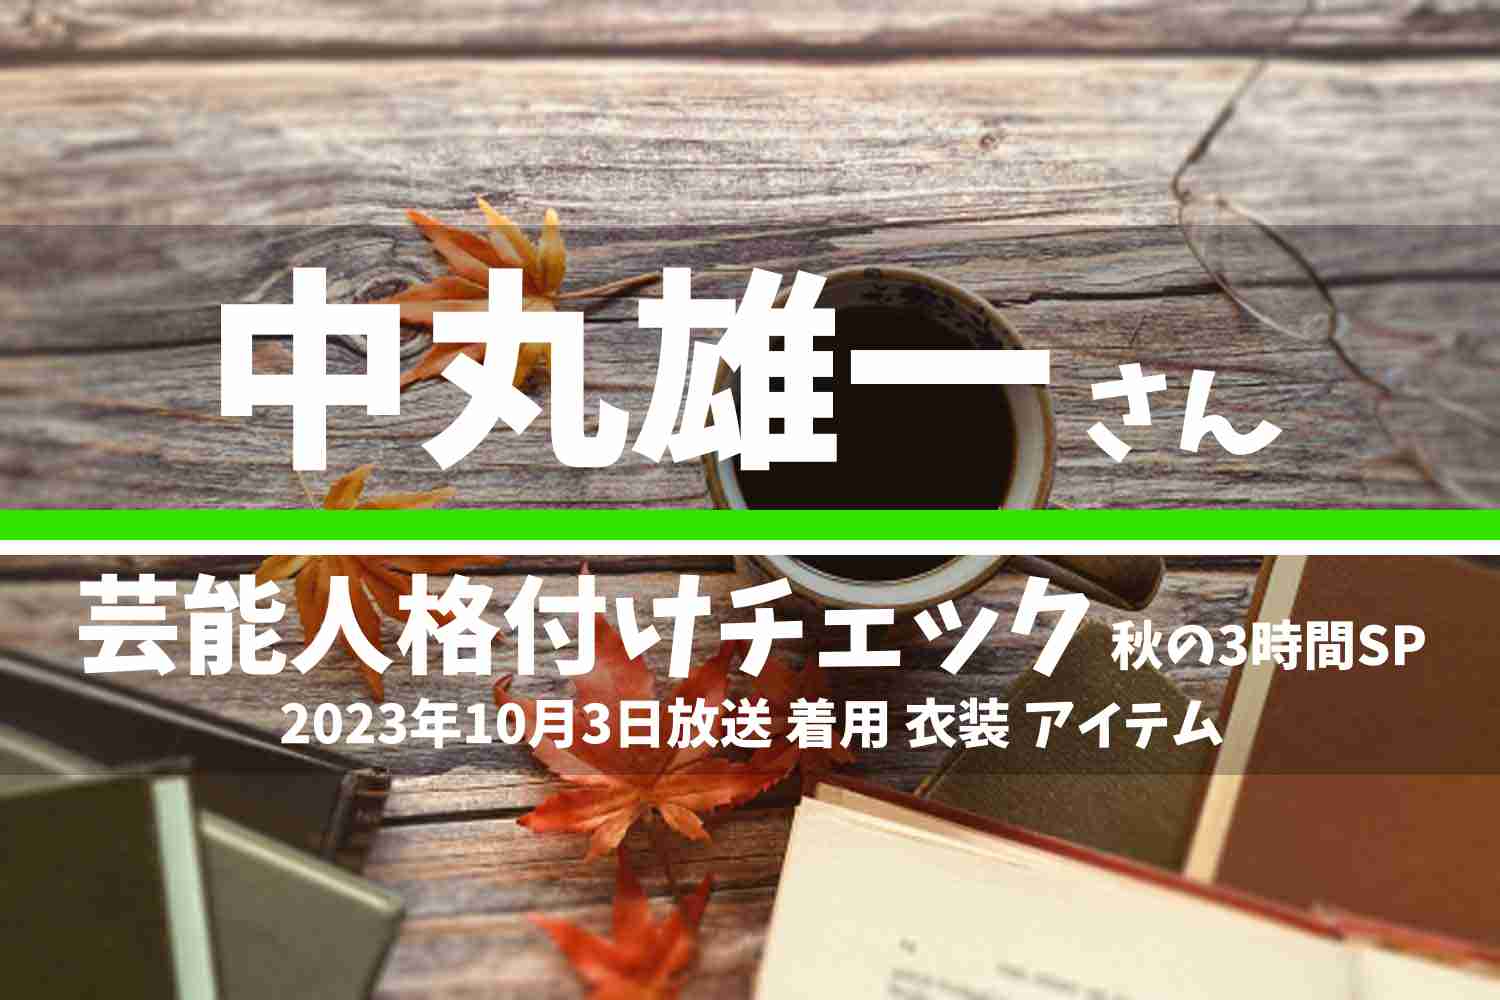 芸能人格付けチェック 中丸雄一さん 番組 衣装 2023年10月3日放送